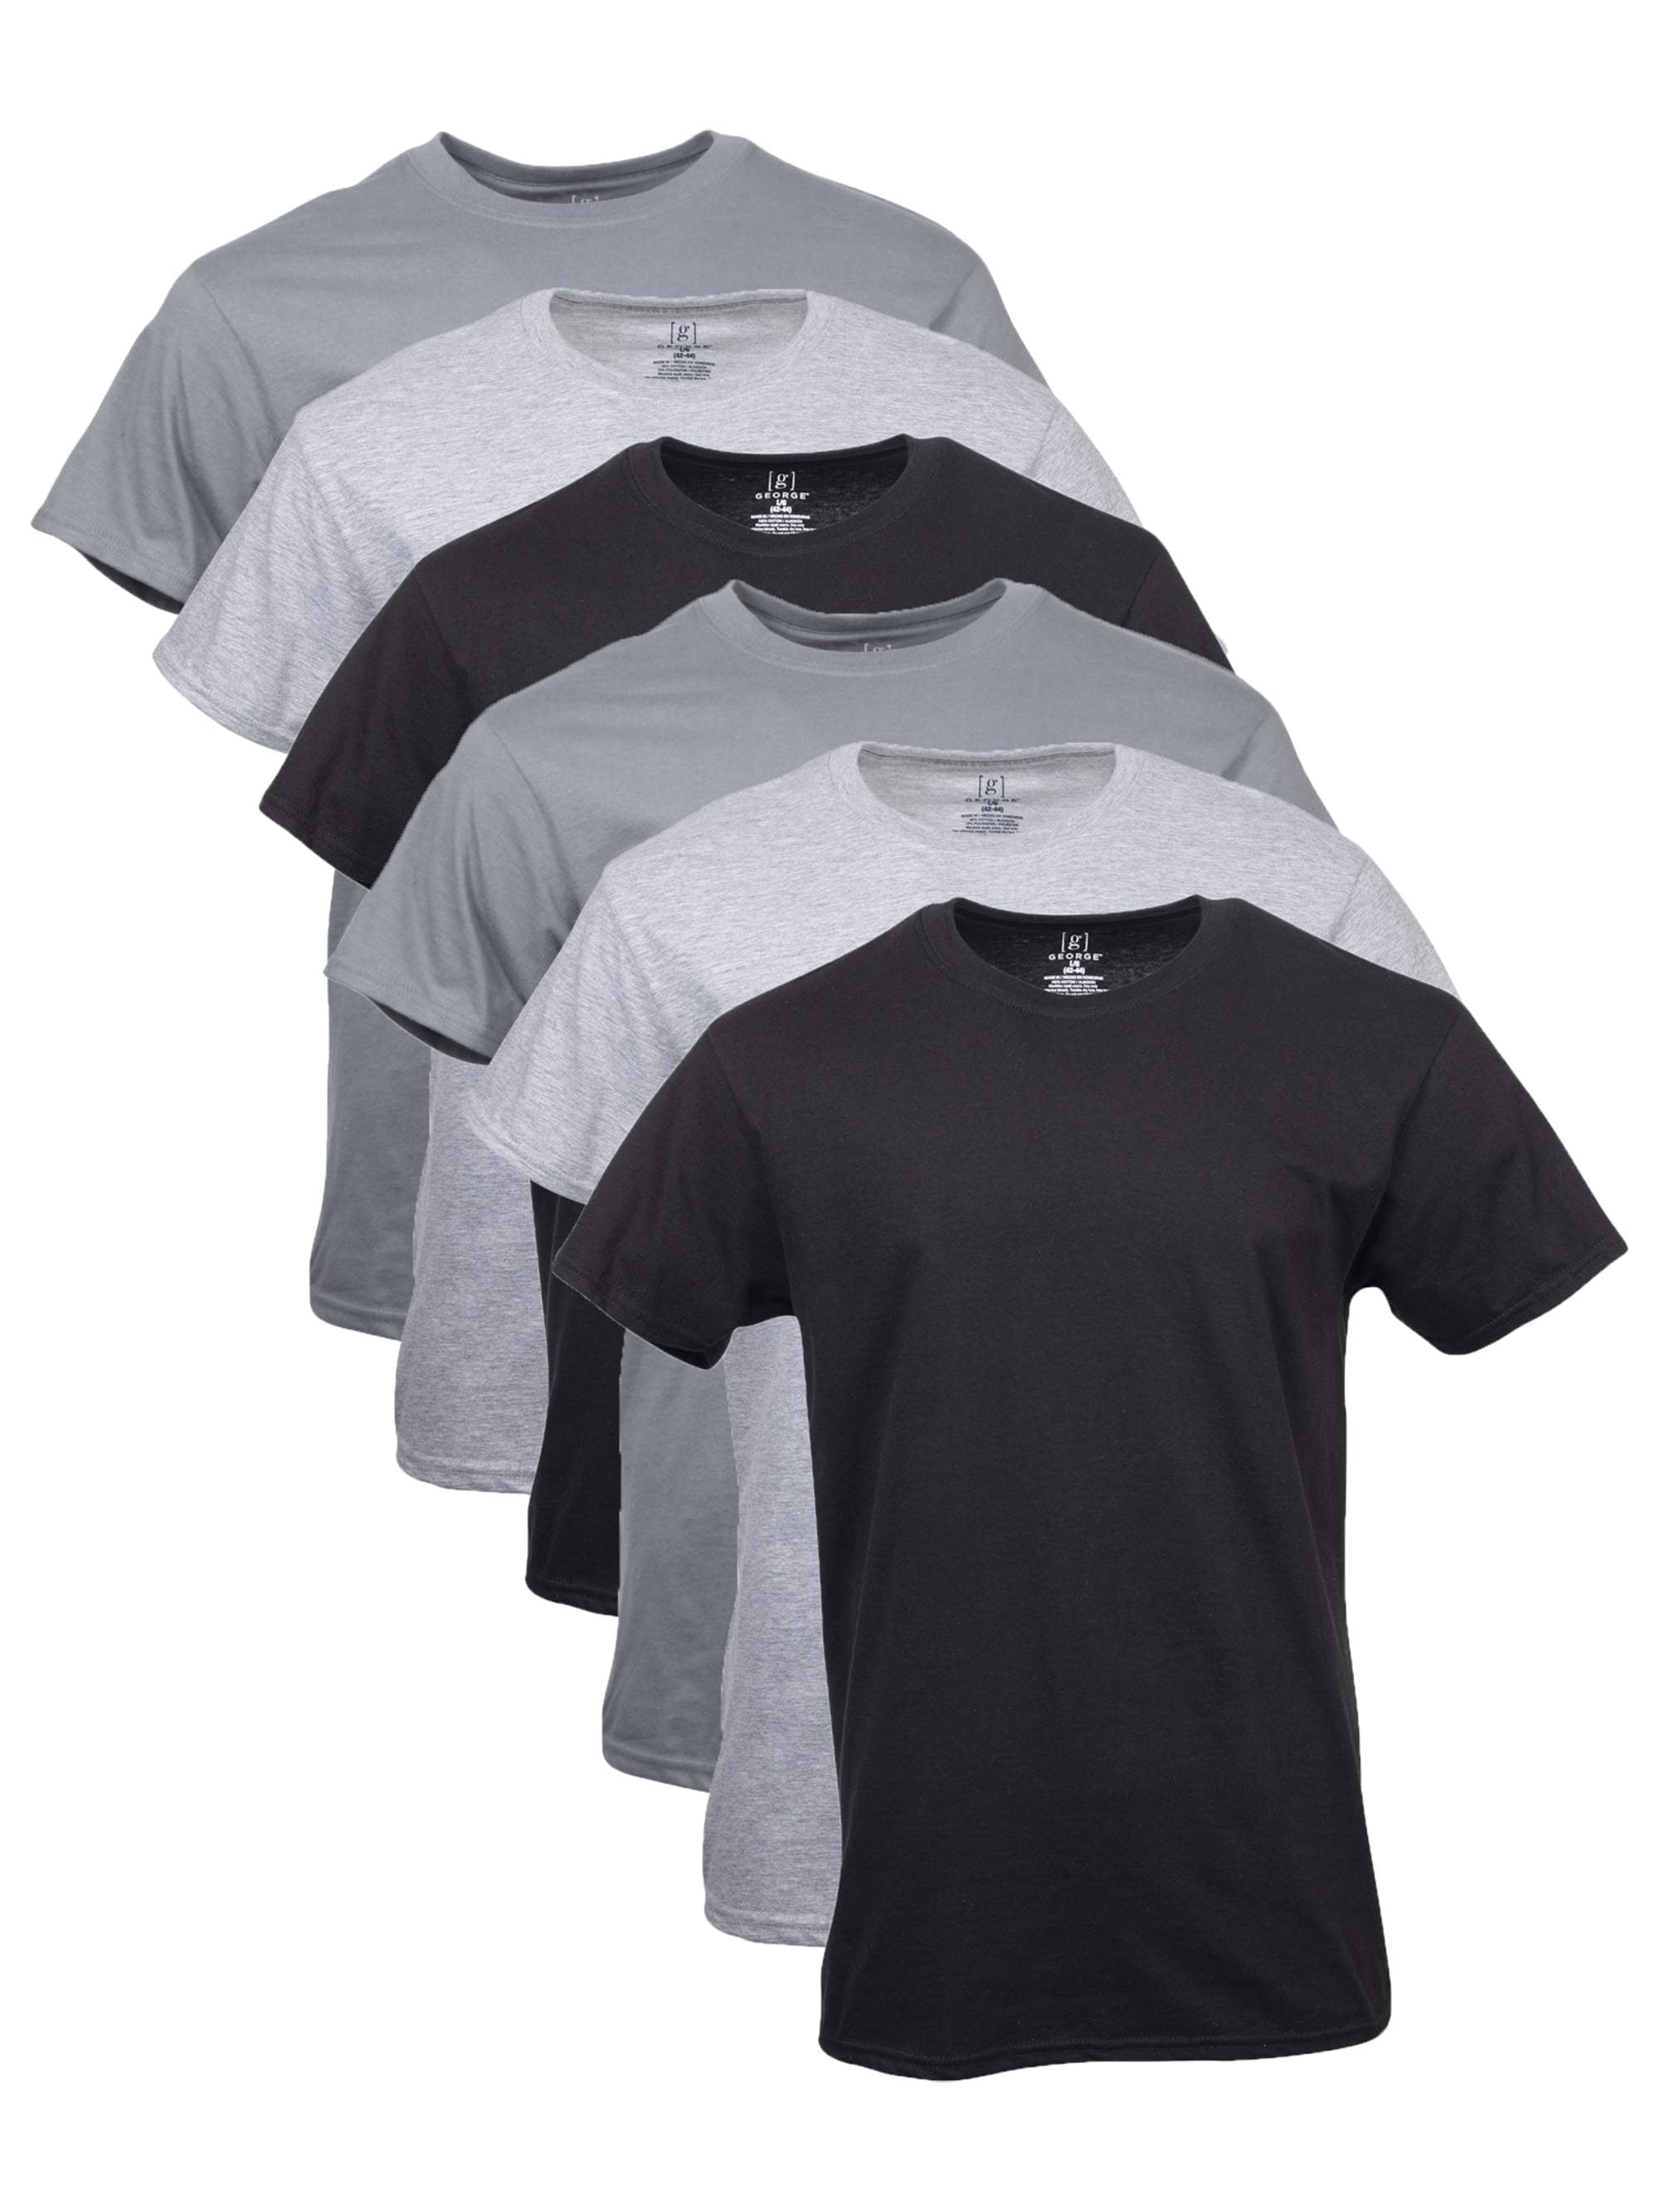 XXL Light Gray Brand New Reebok Men's Soft Cotton T-Shirt  2XL 